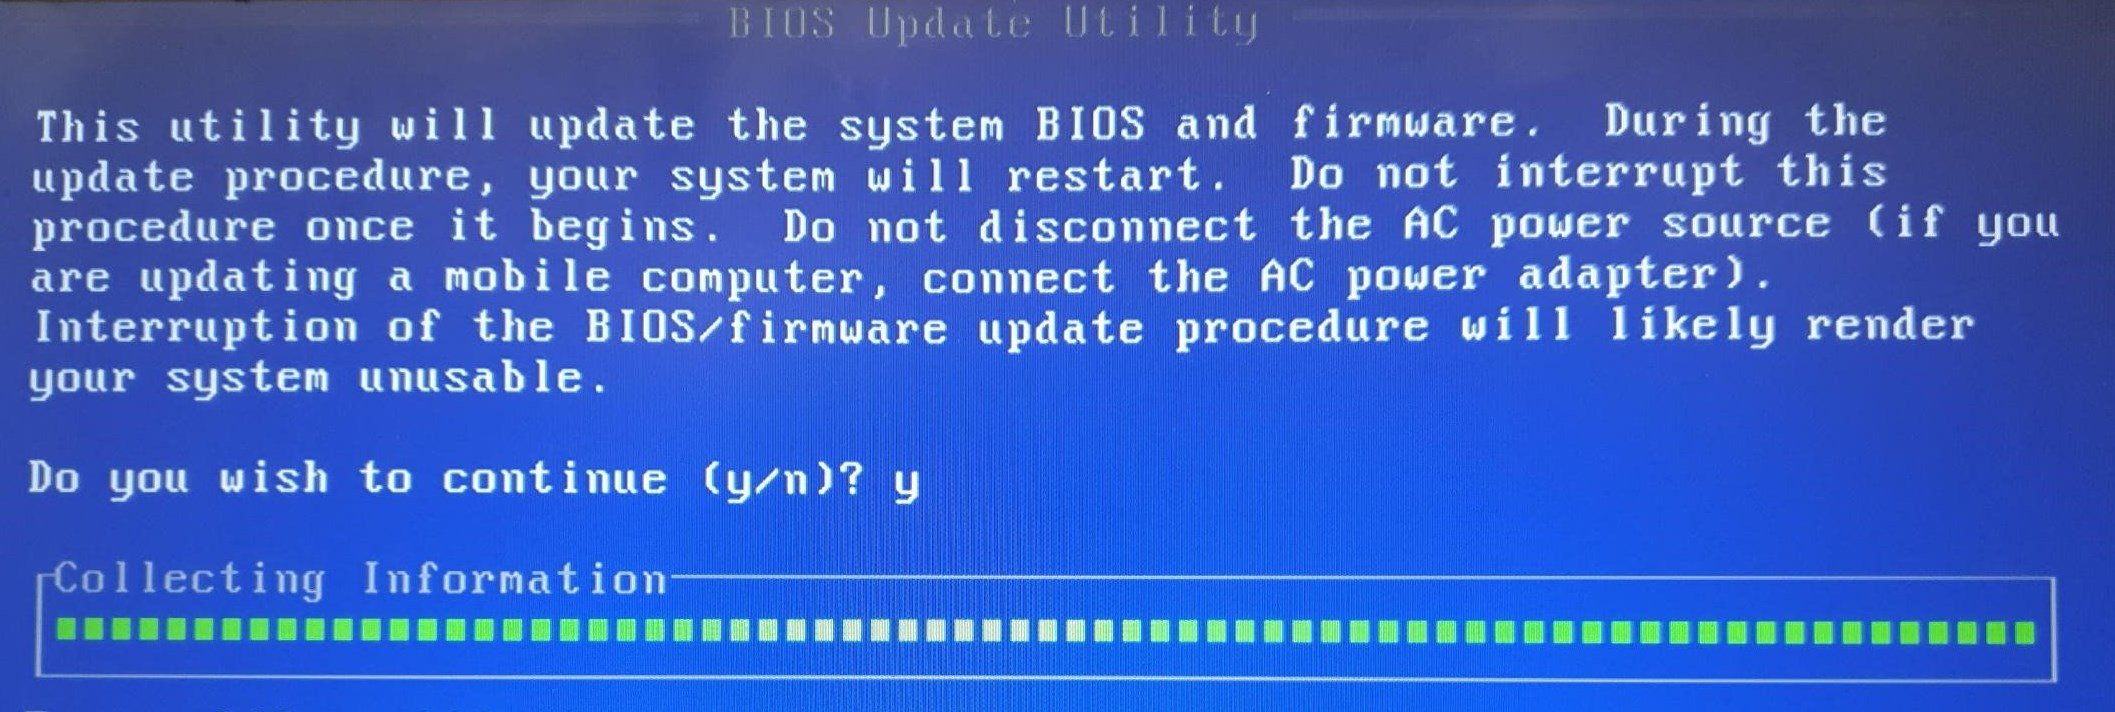 BIOS-Update